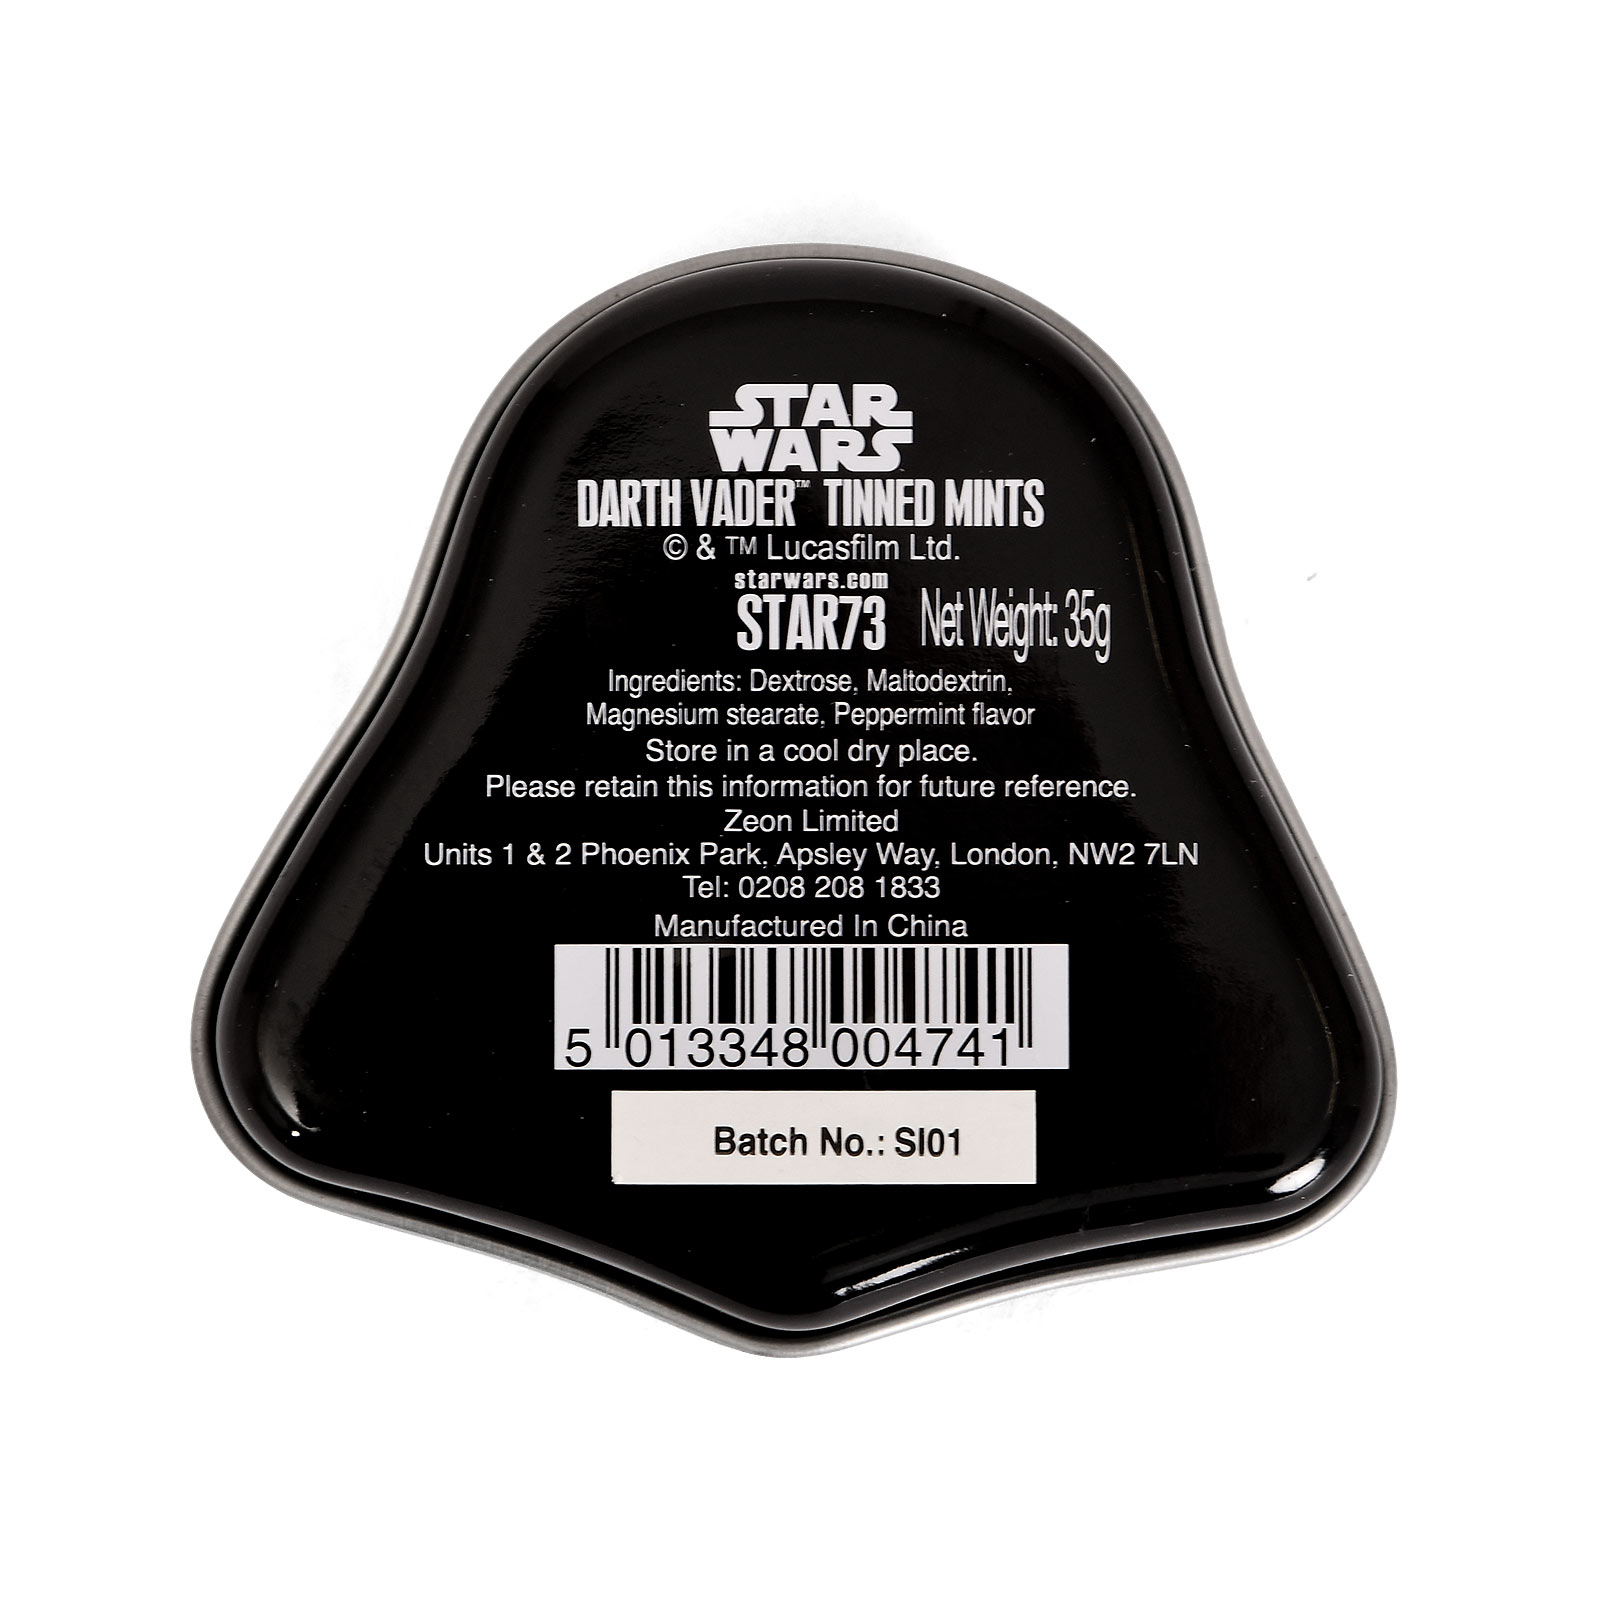 Star Wars - Darth Vader mints